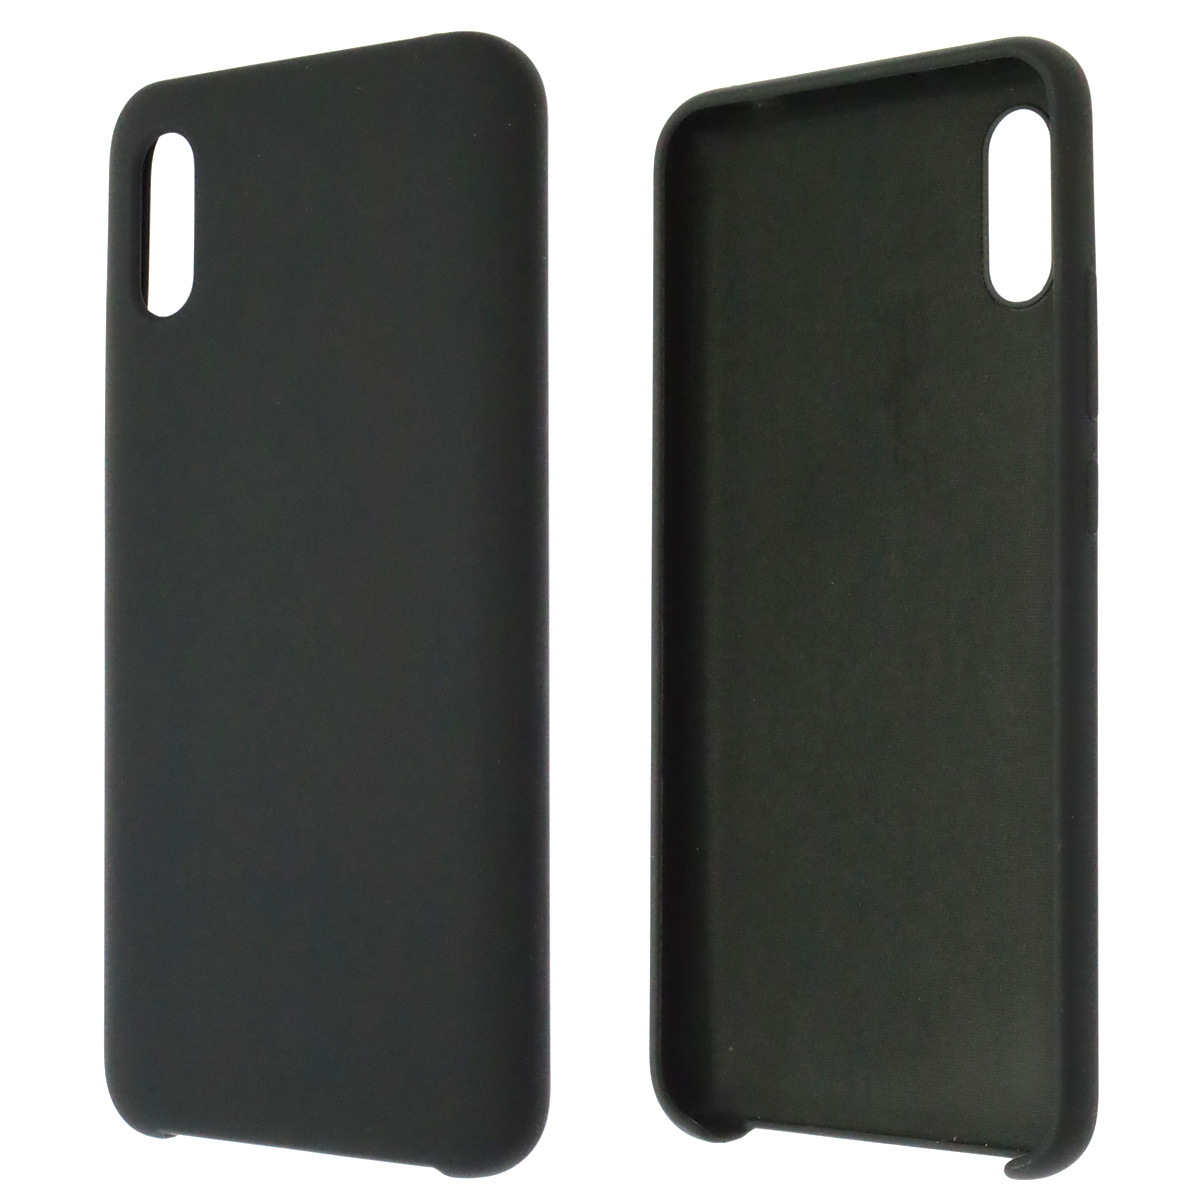 Чехол накладка Silicon Cover для XIAOMI Redmi 9A, силикон, бархат, цвет черный